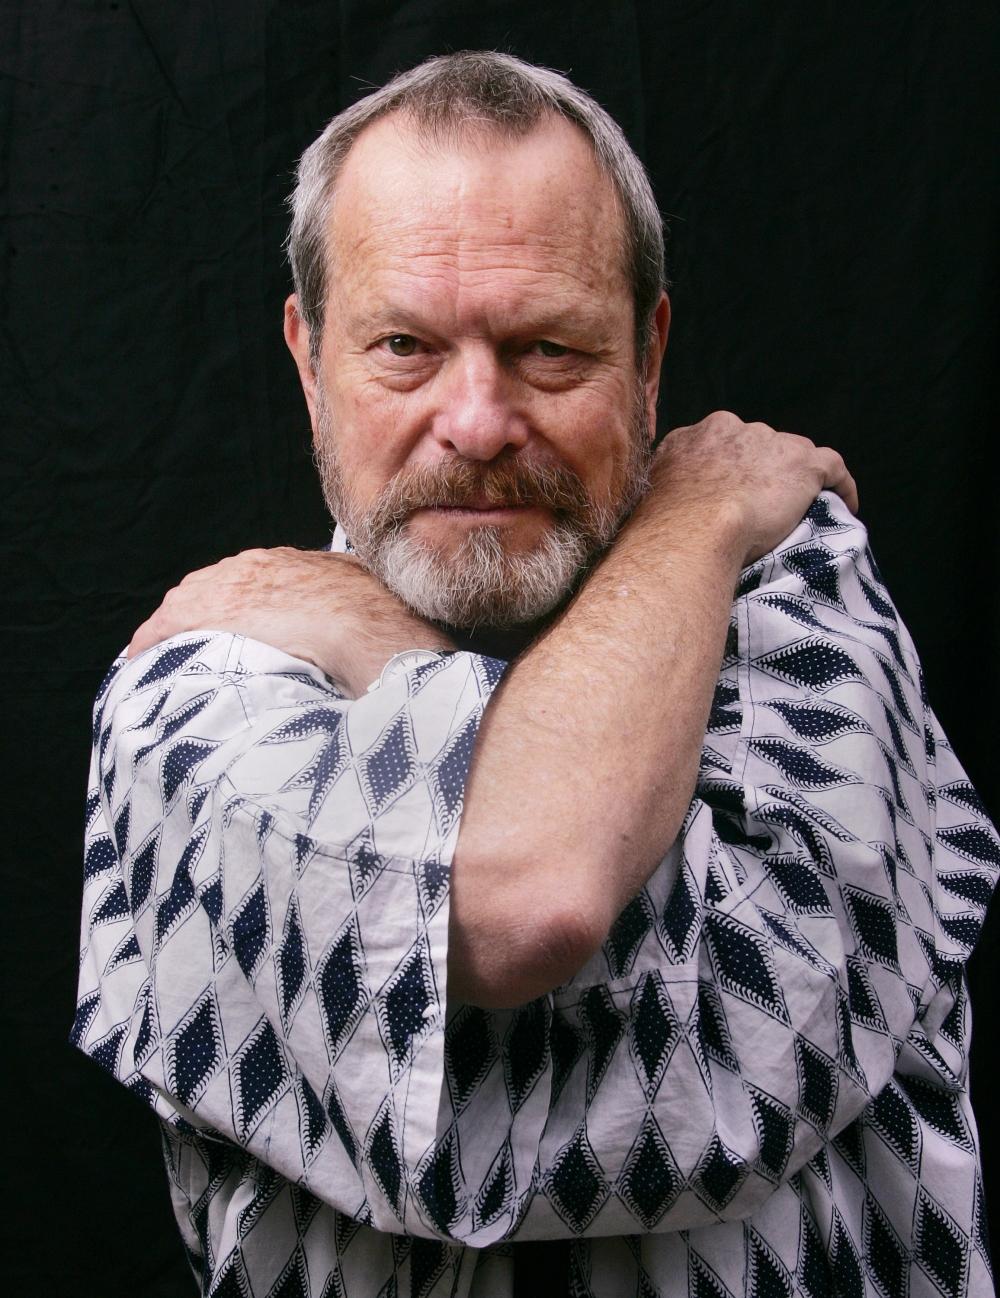 Photo №7644 Terry Gilliam.